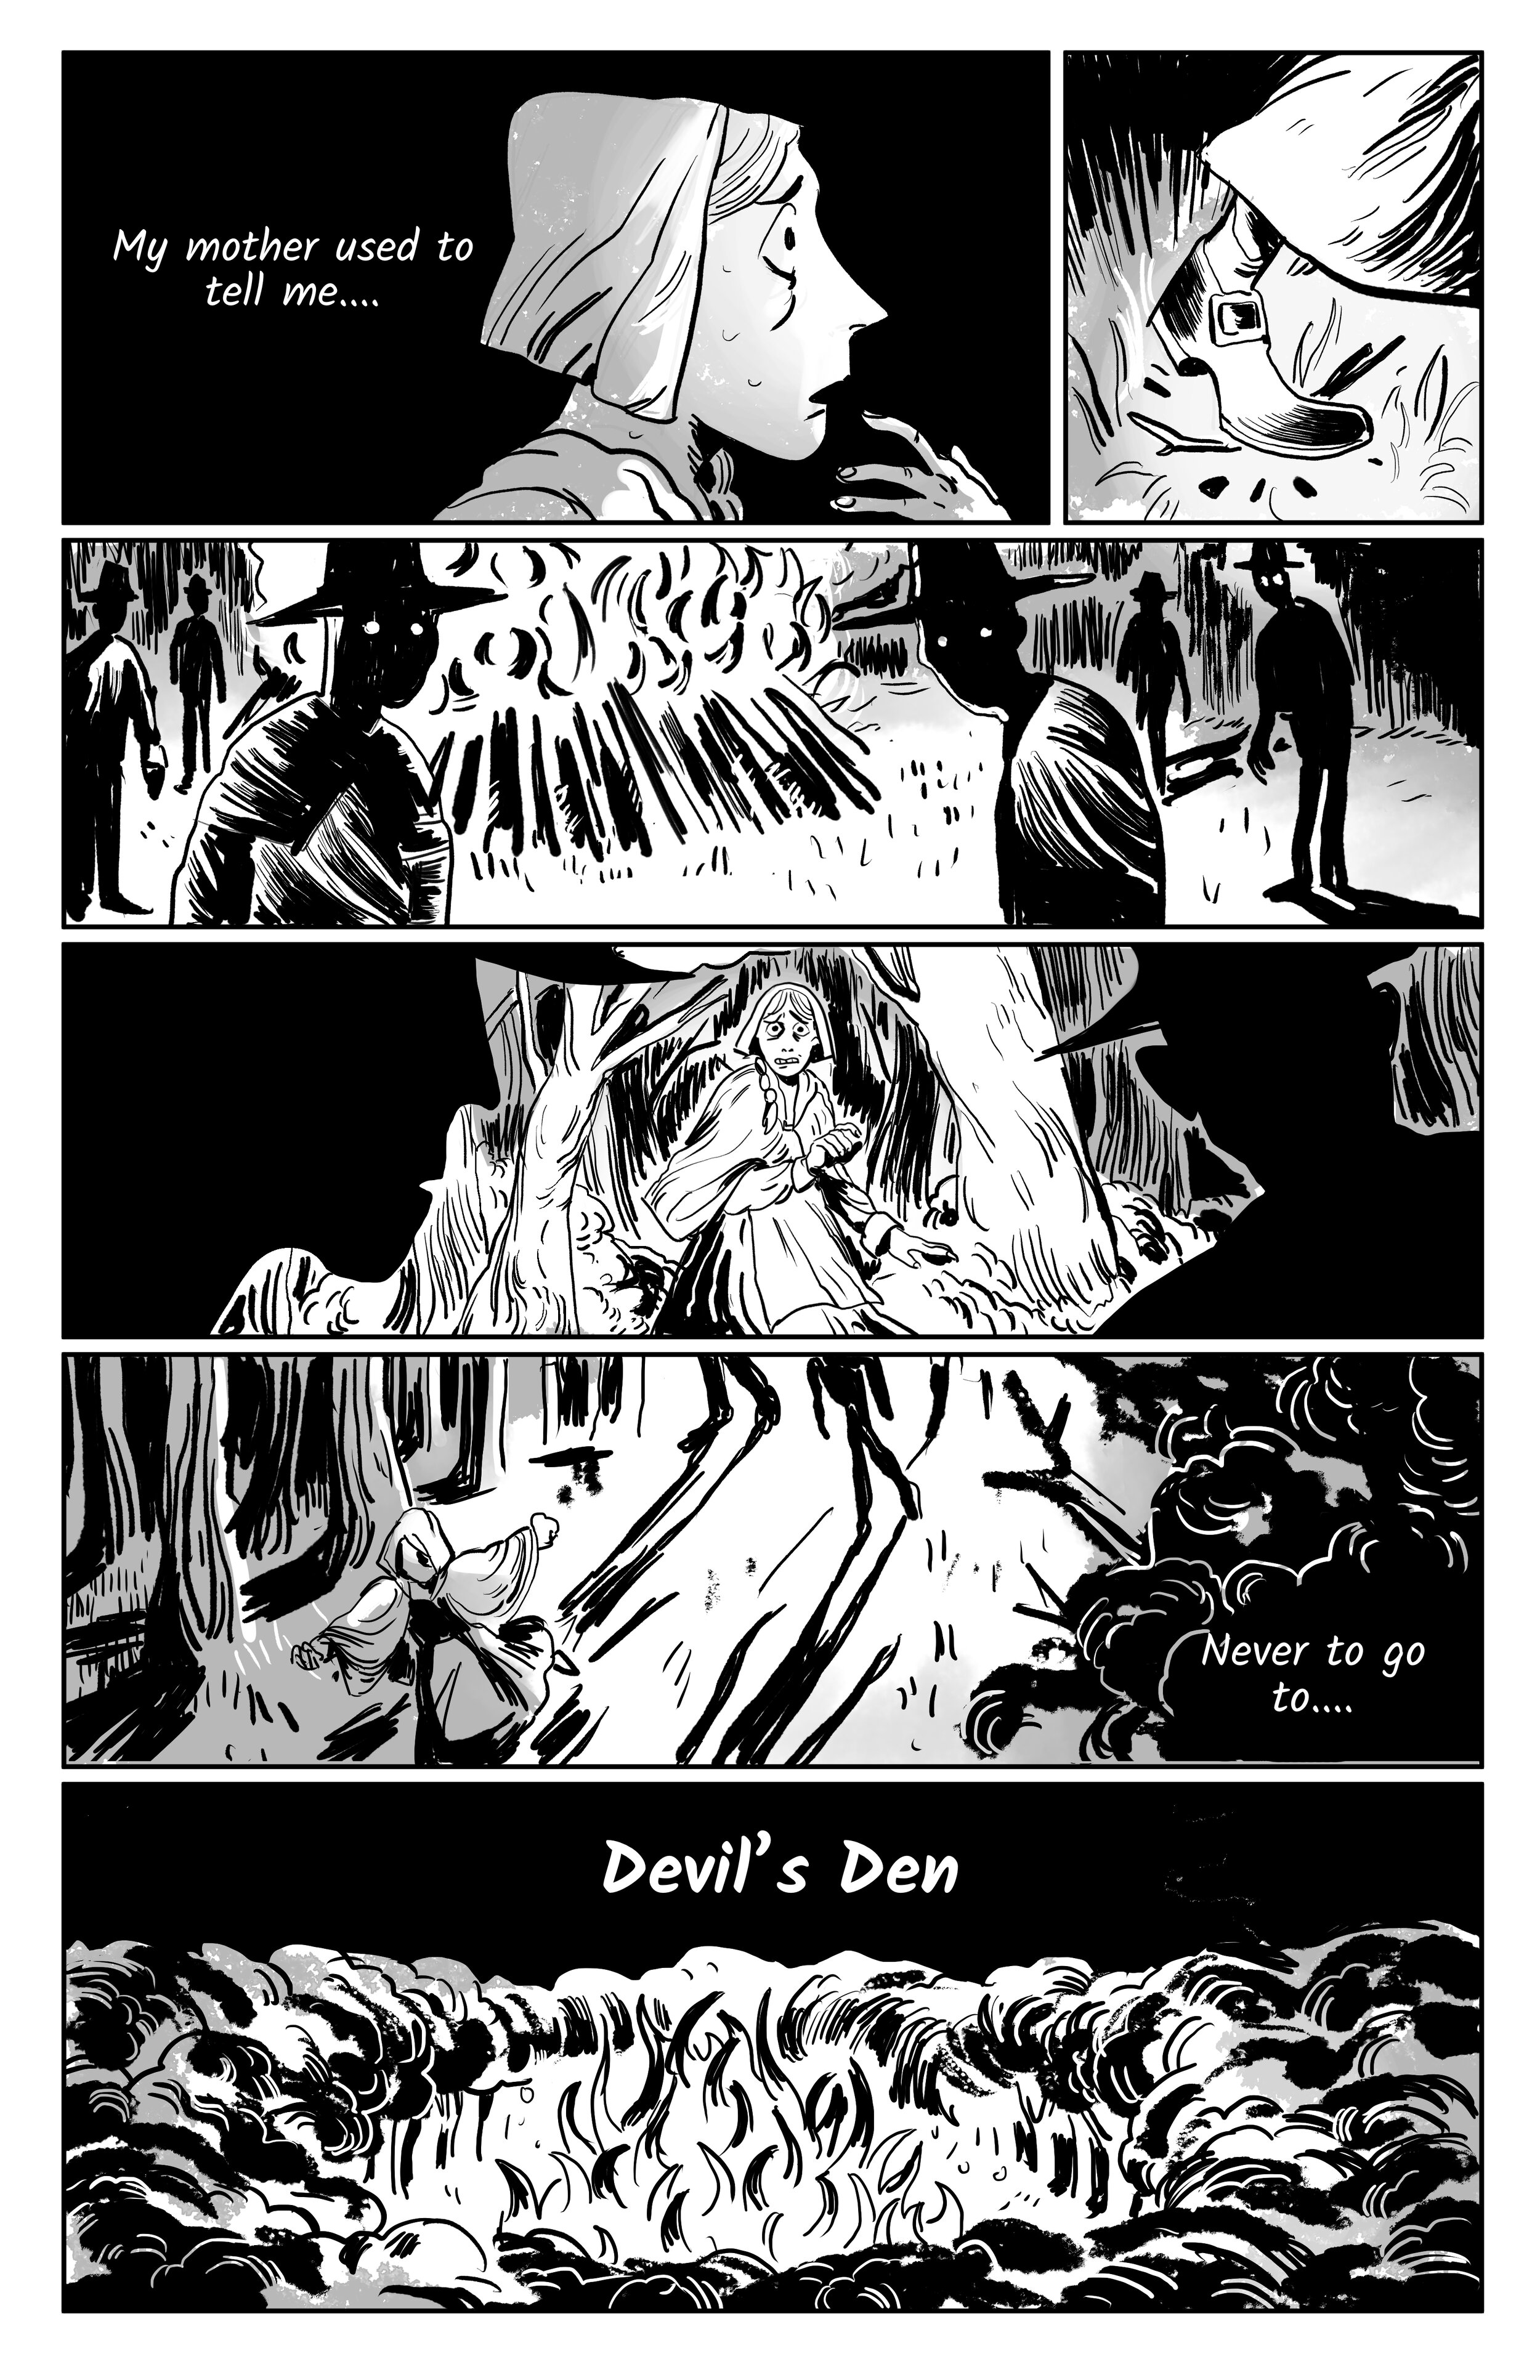 Devil's Den pg 3.jpg